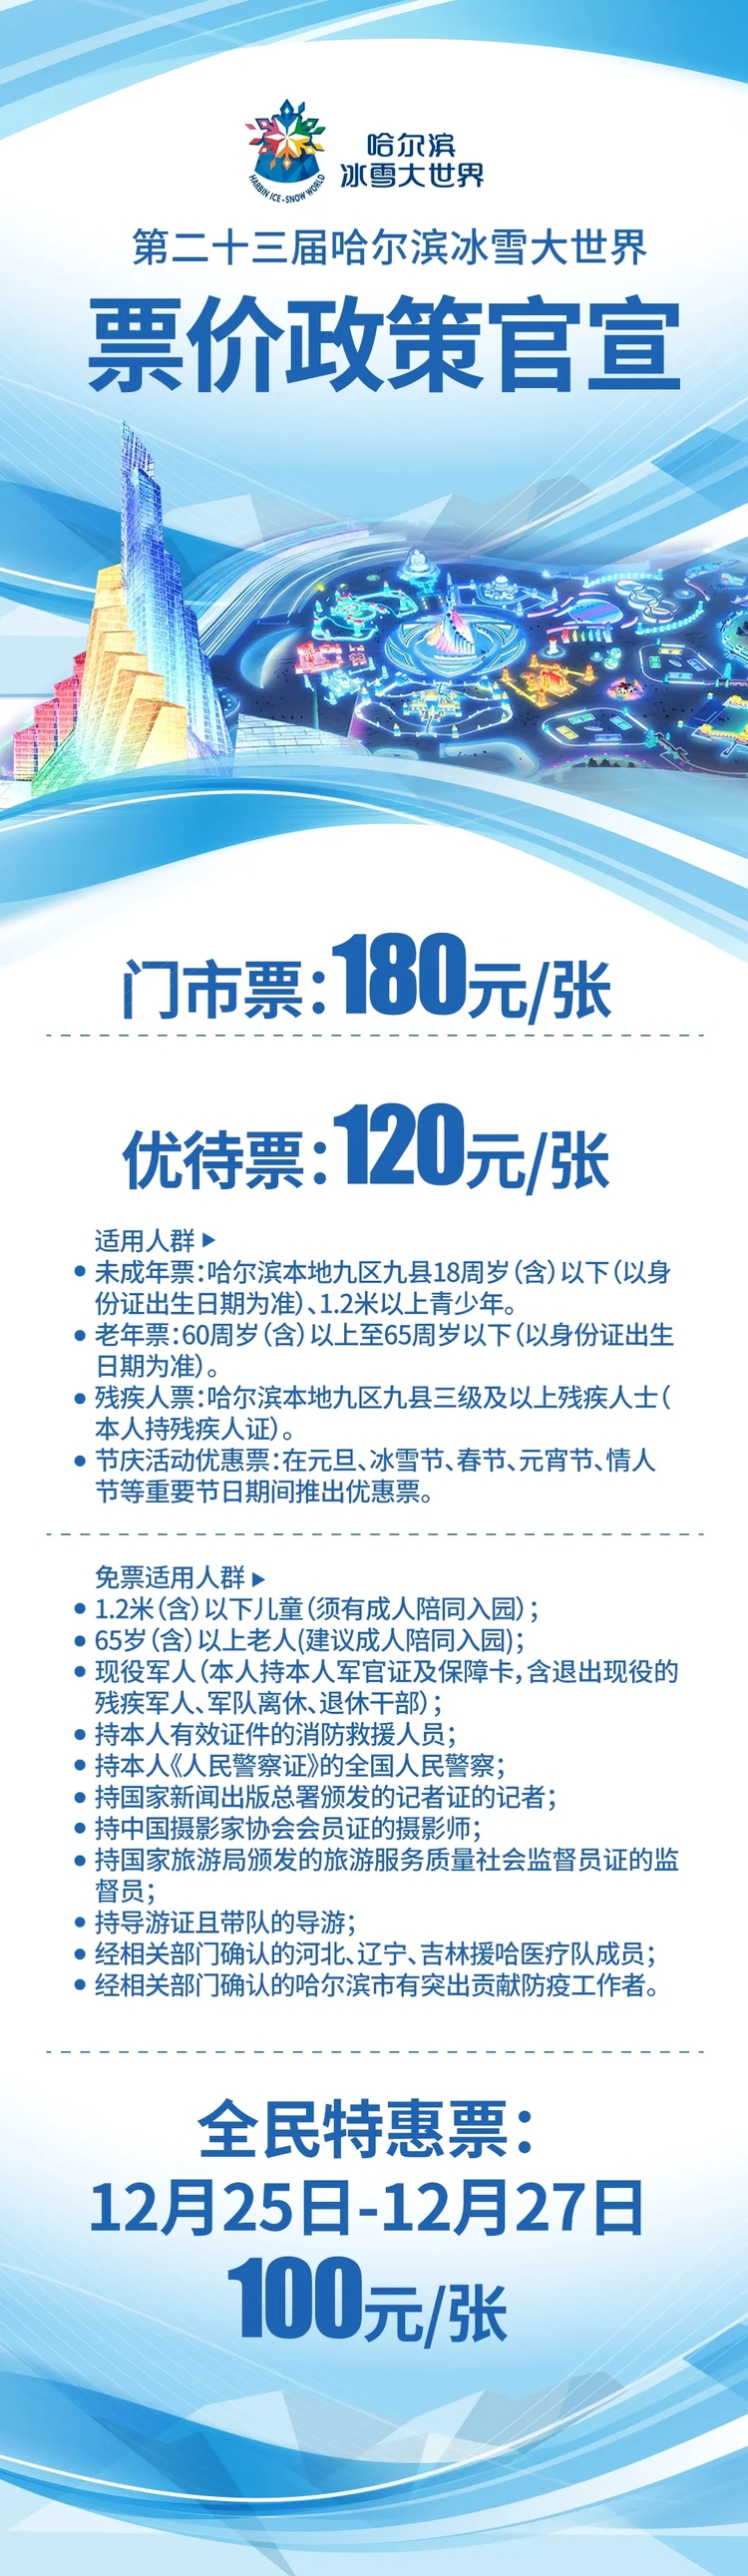 12月25日第二十三届哈尔滨冰雪大世界开园 25日至27日全民特惠票100元/人_fororder_640.webp (2)